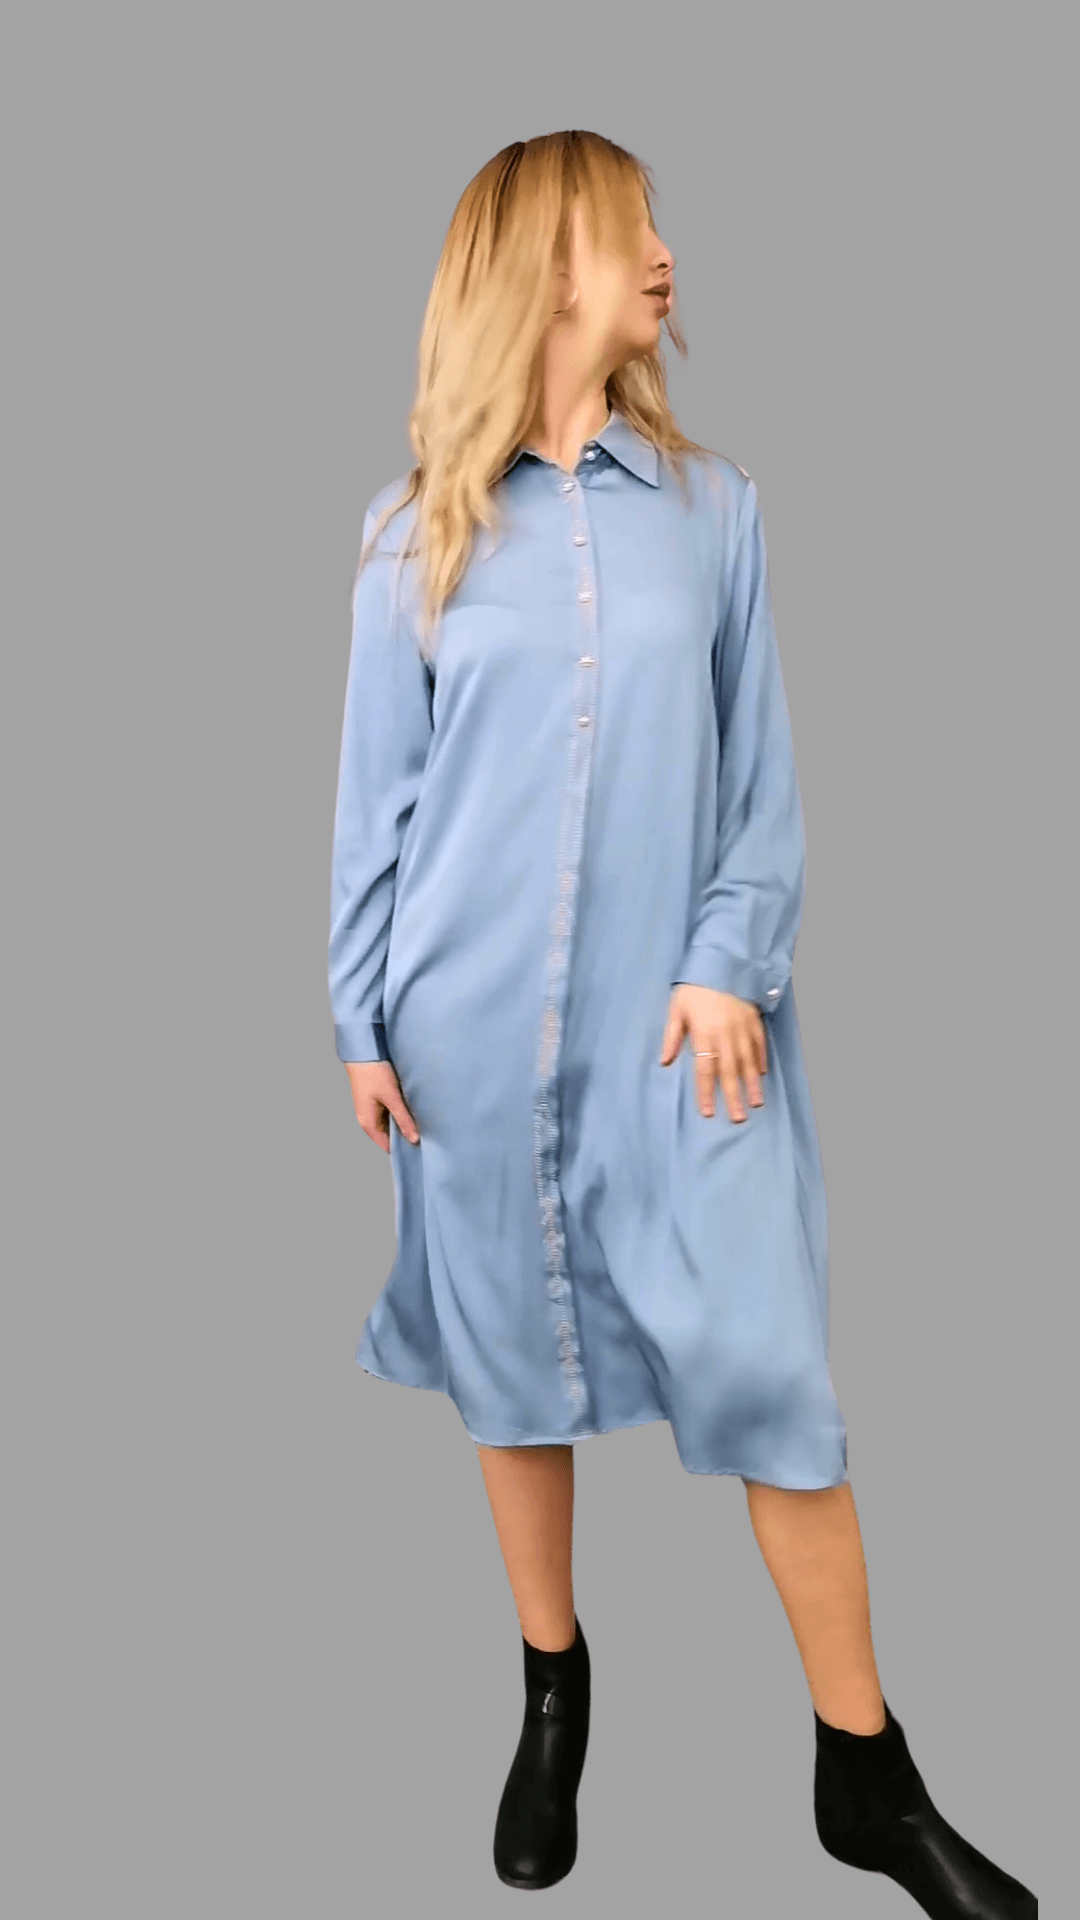 Kleid aus Maulbeerseide in Hellblau mit Stickmuster, Einheitsgröße